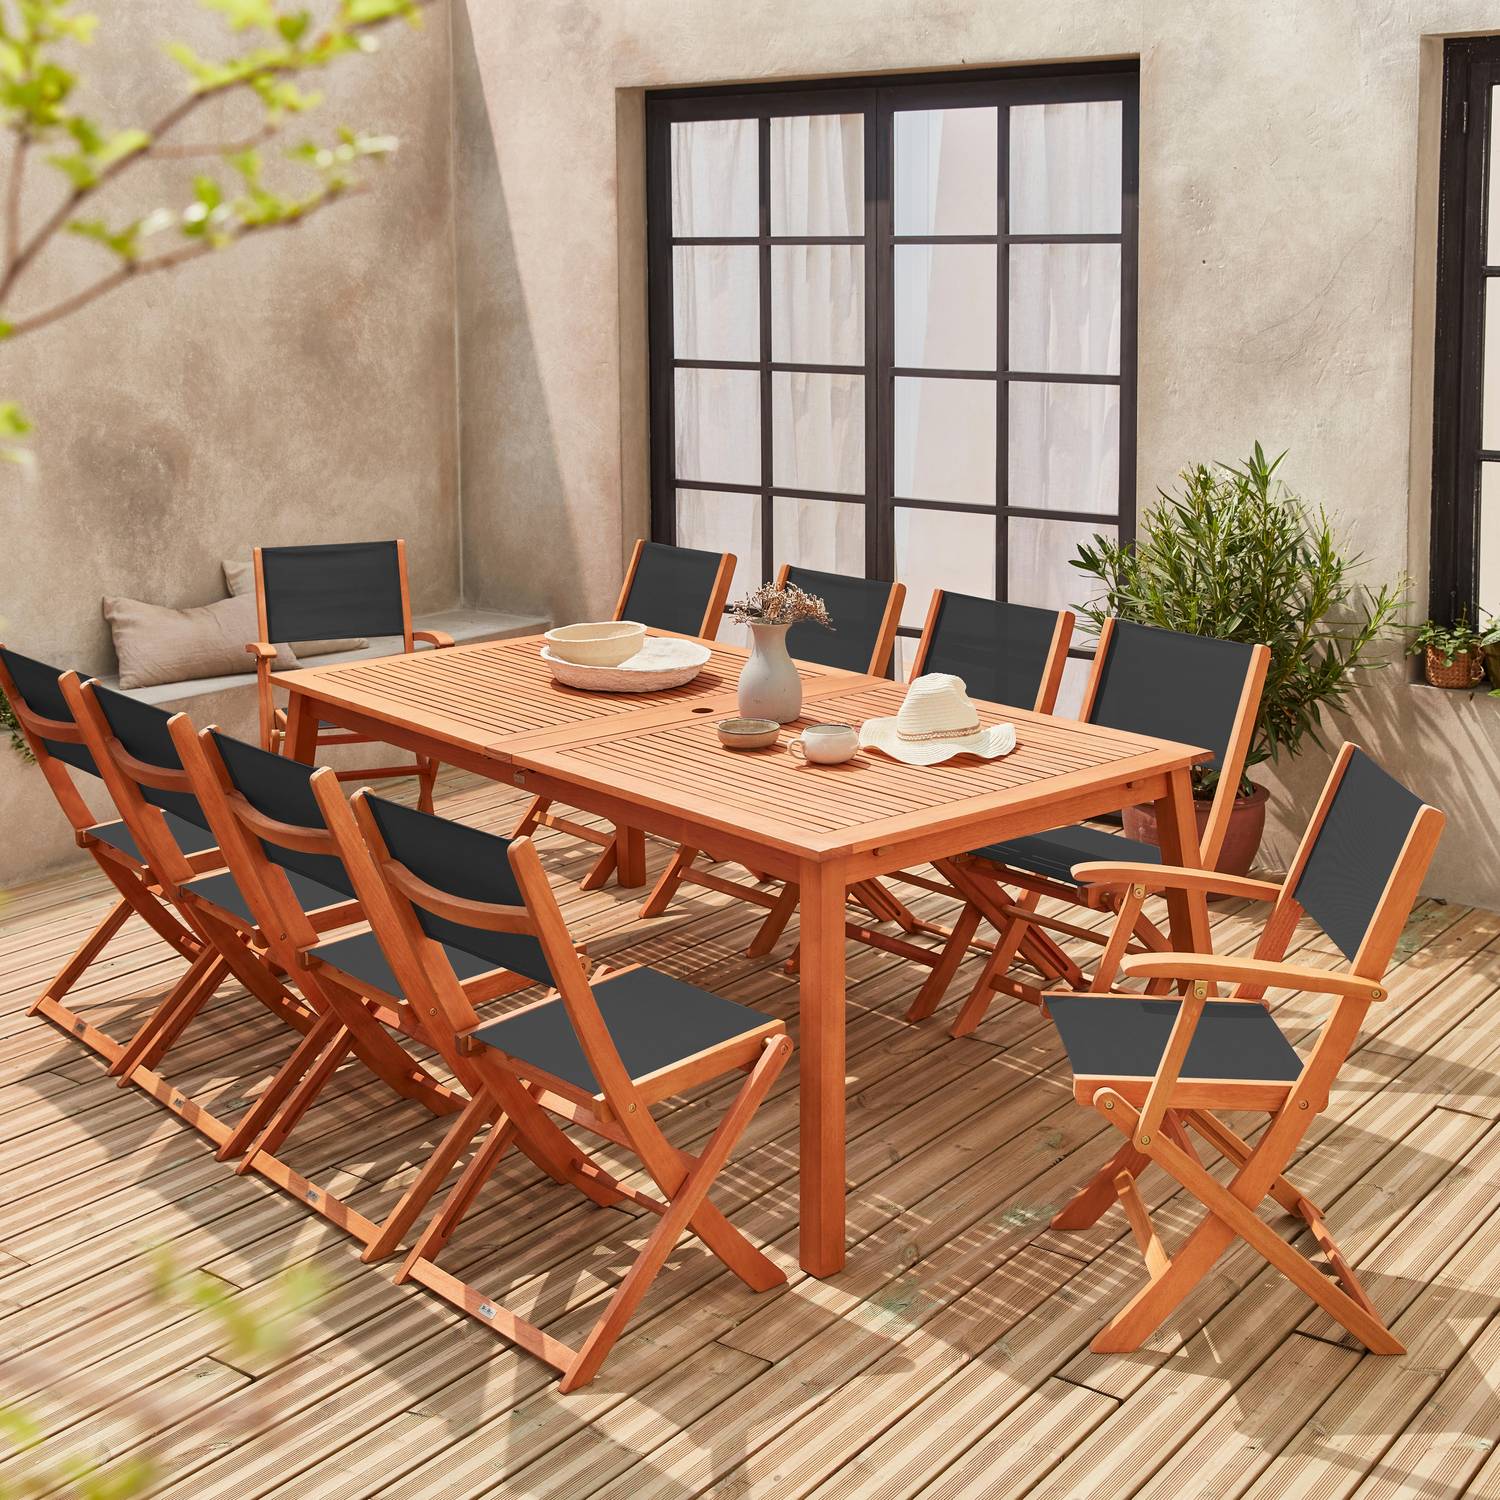 Ausziehbares Gartenmöbelset aus Holz - Almeria Tisch 200/250/300cm mit 2 Verlängerungsplatten, 2 Sesseln und 8 Stühlen, aus geöltem FSC Eukalyptusholz und schwarzem  Textilene Photo2